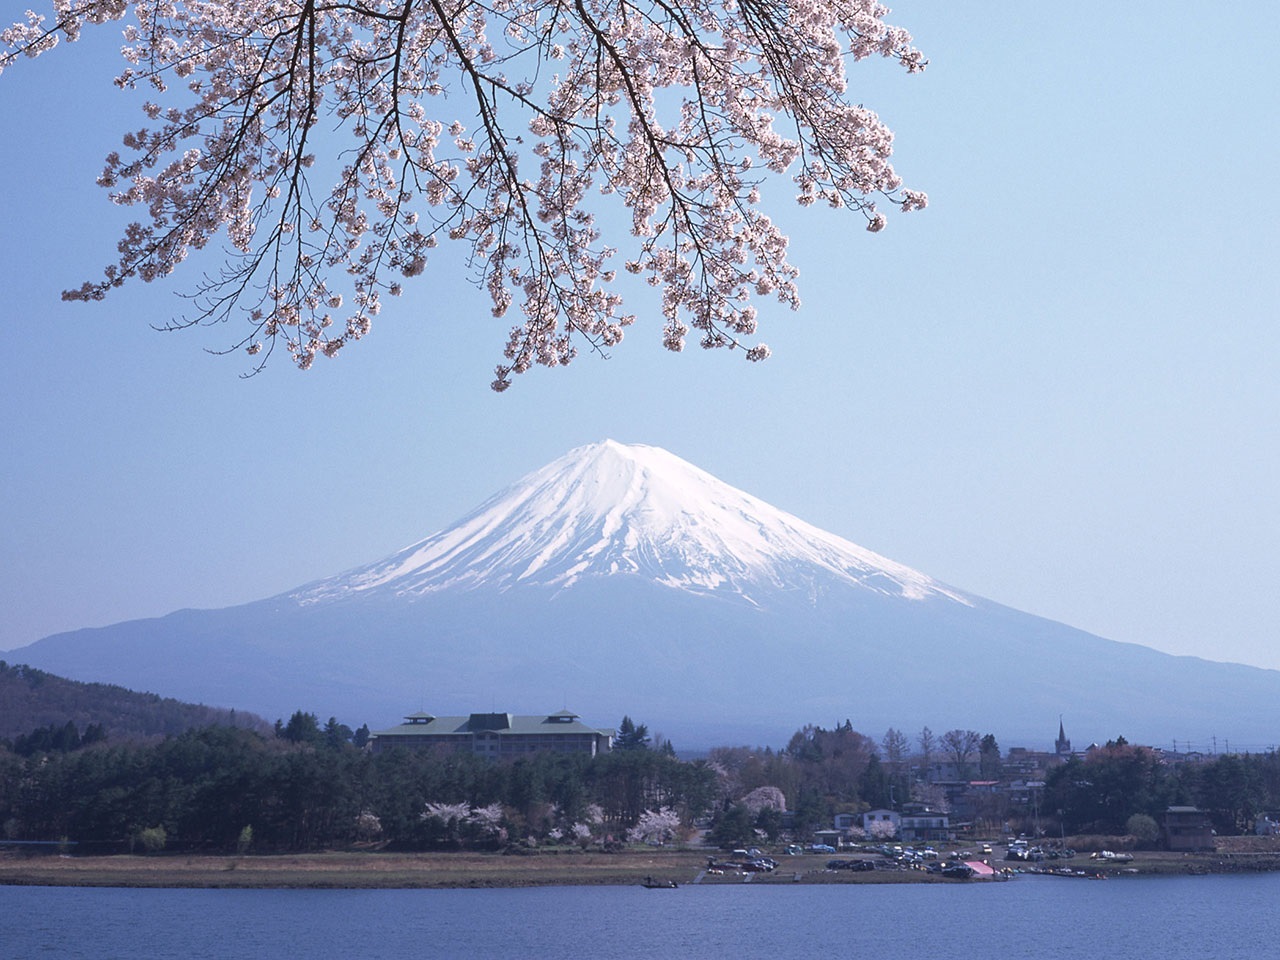 富士山海拔只有3776米,却感觉比8844米的珠穆朗玛峰雄伟